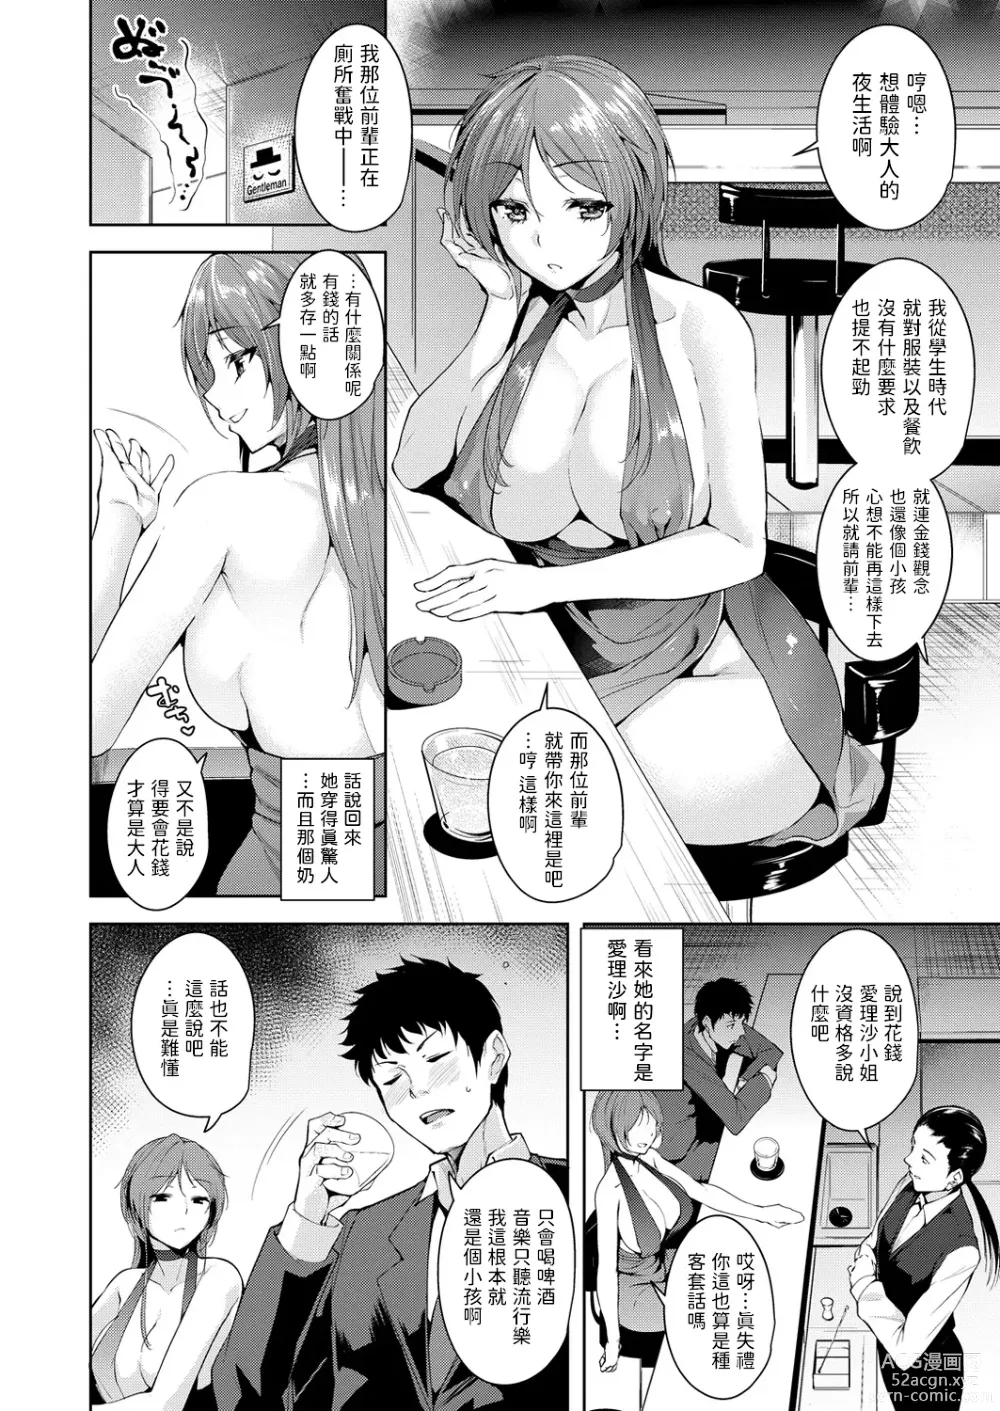 Page 2 of manga Maraschino Cherry Kiss